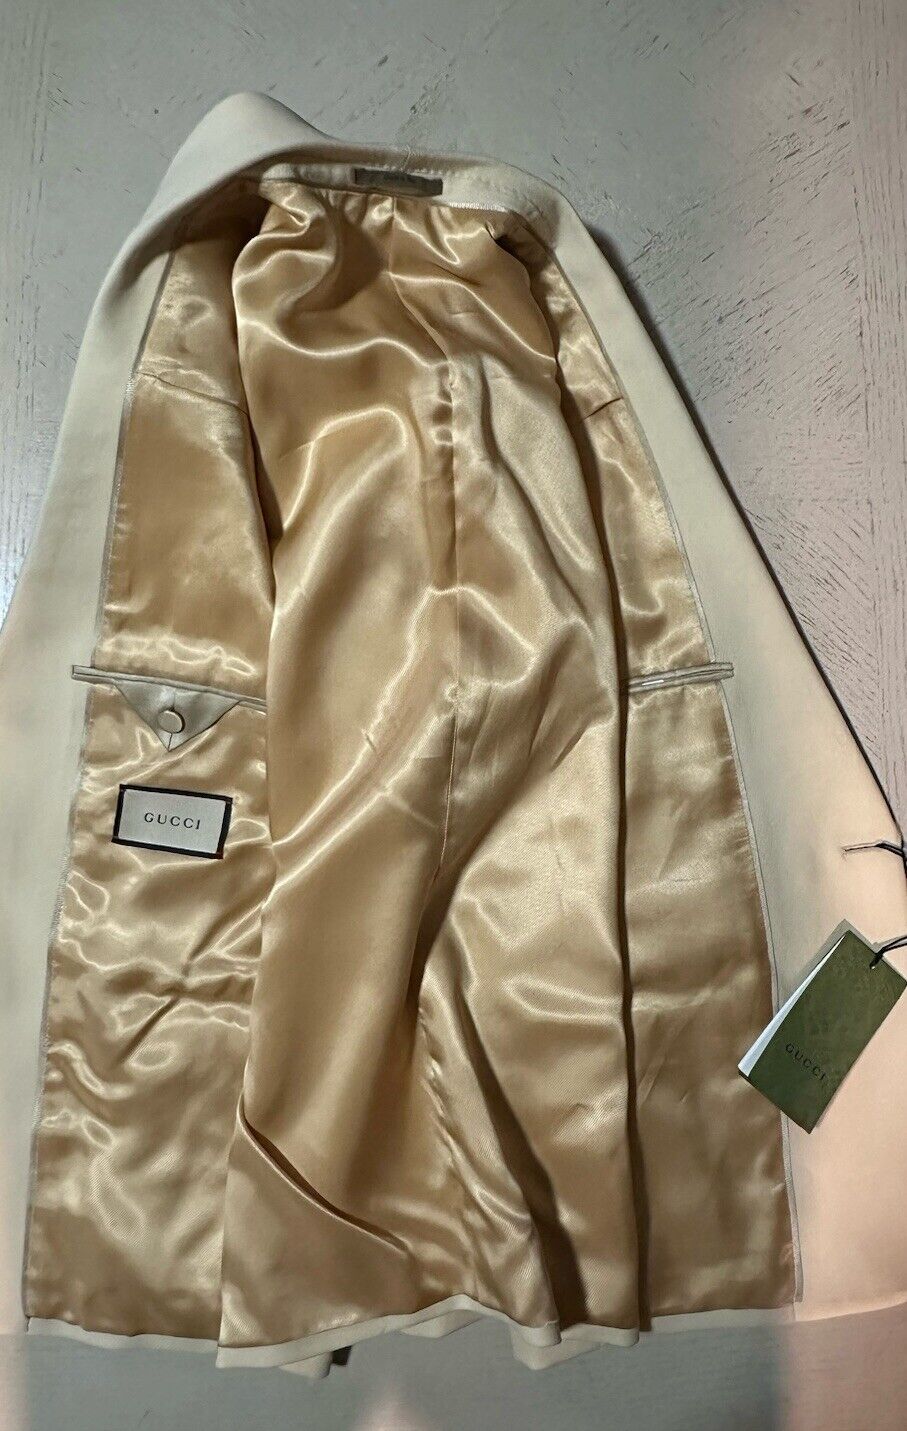 Gucci Men Sport Coat Blazer Color Cornsilk 40R US/50R Eu New $2600